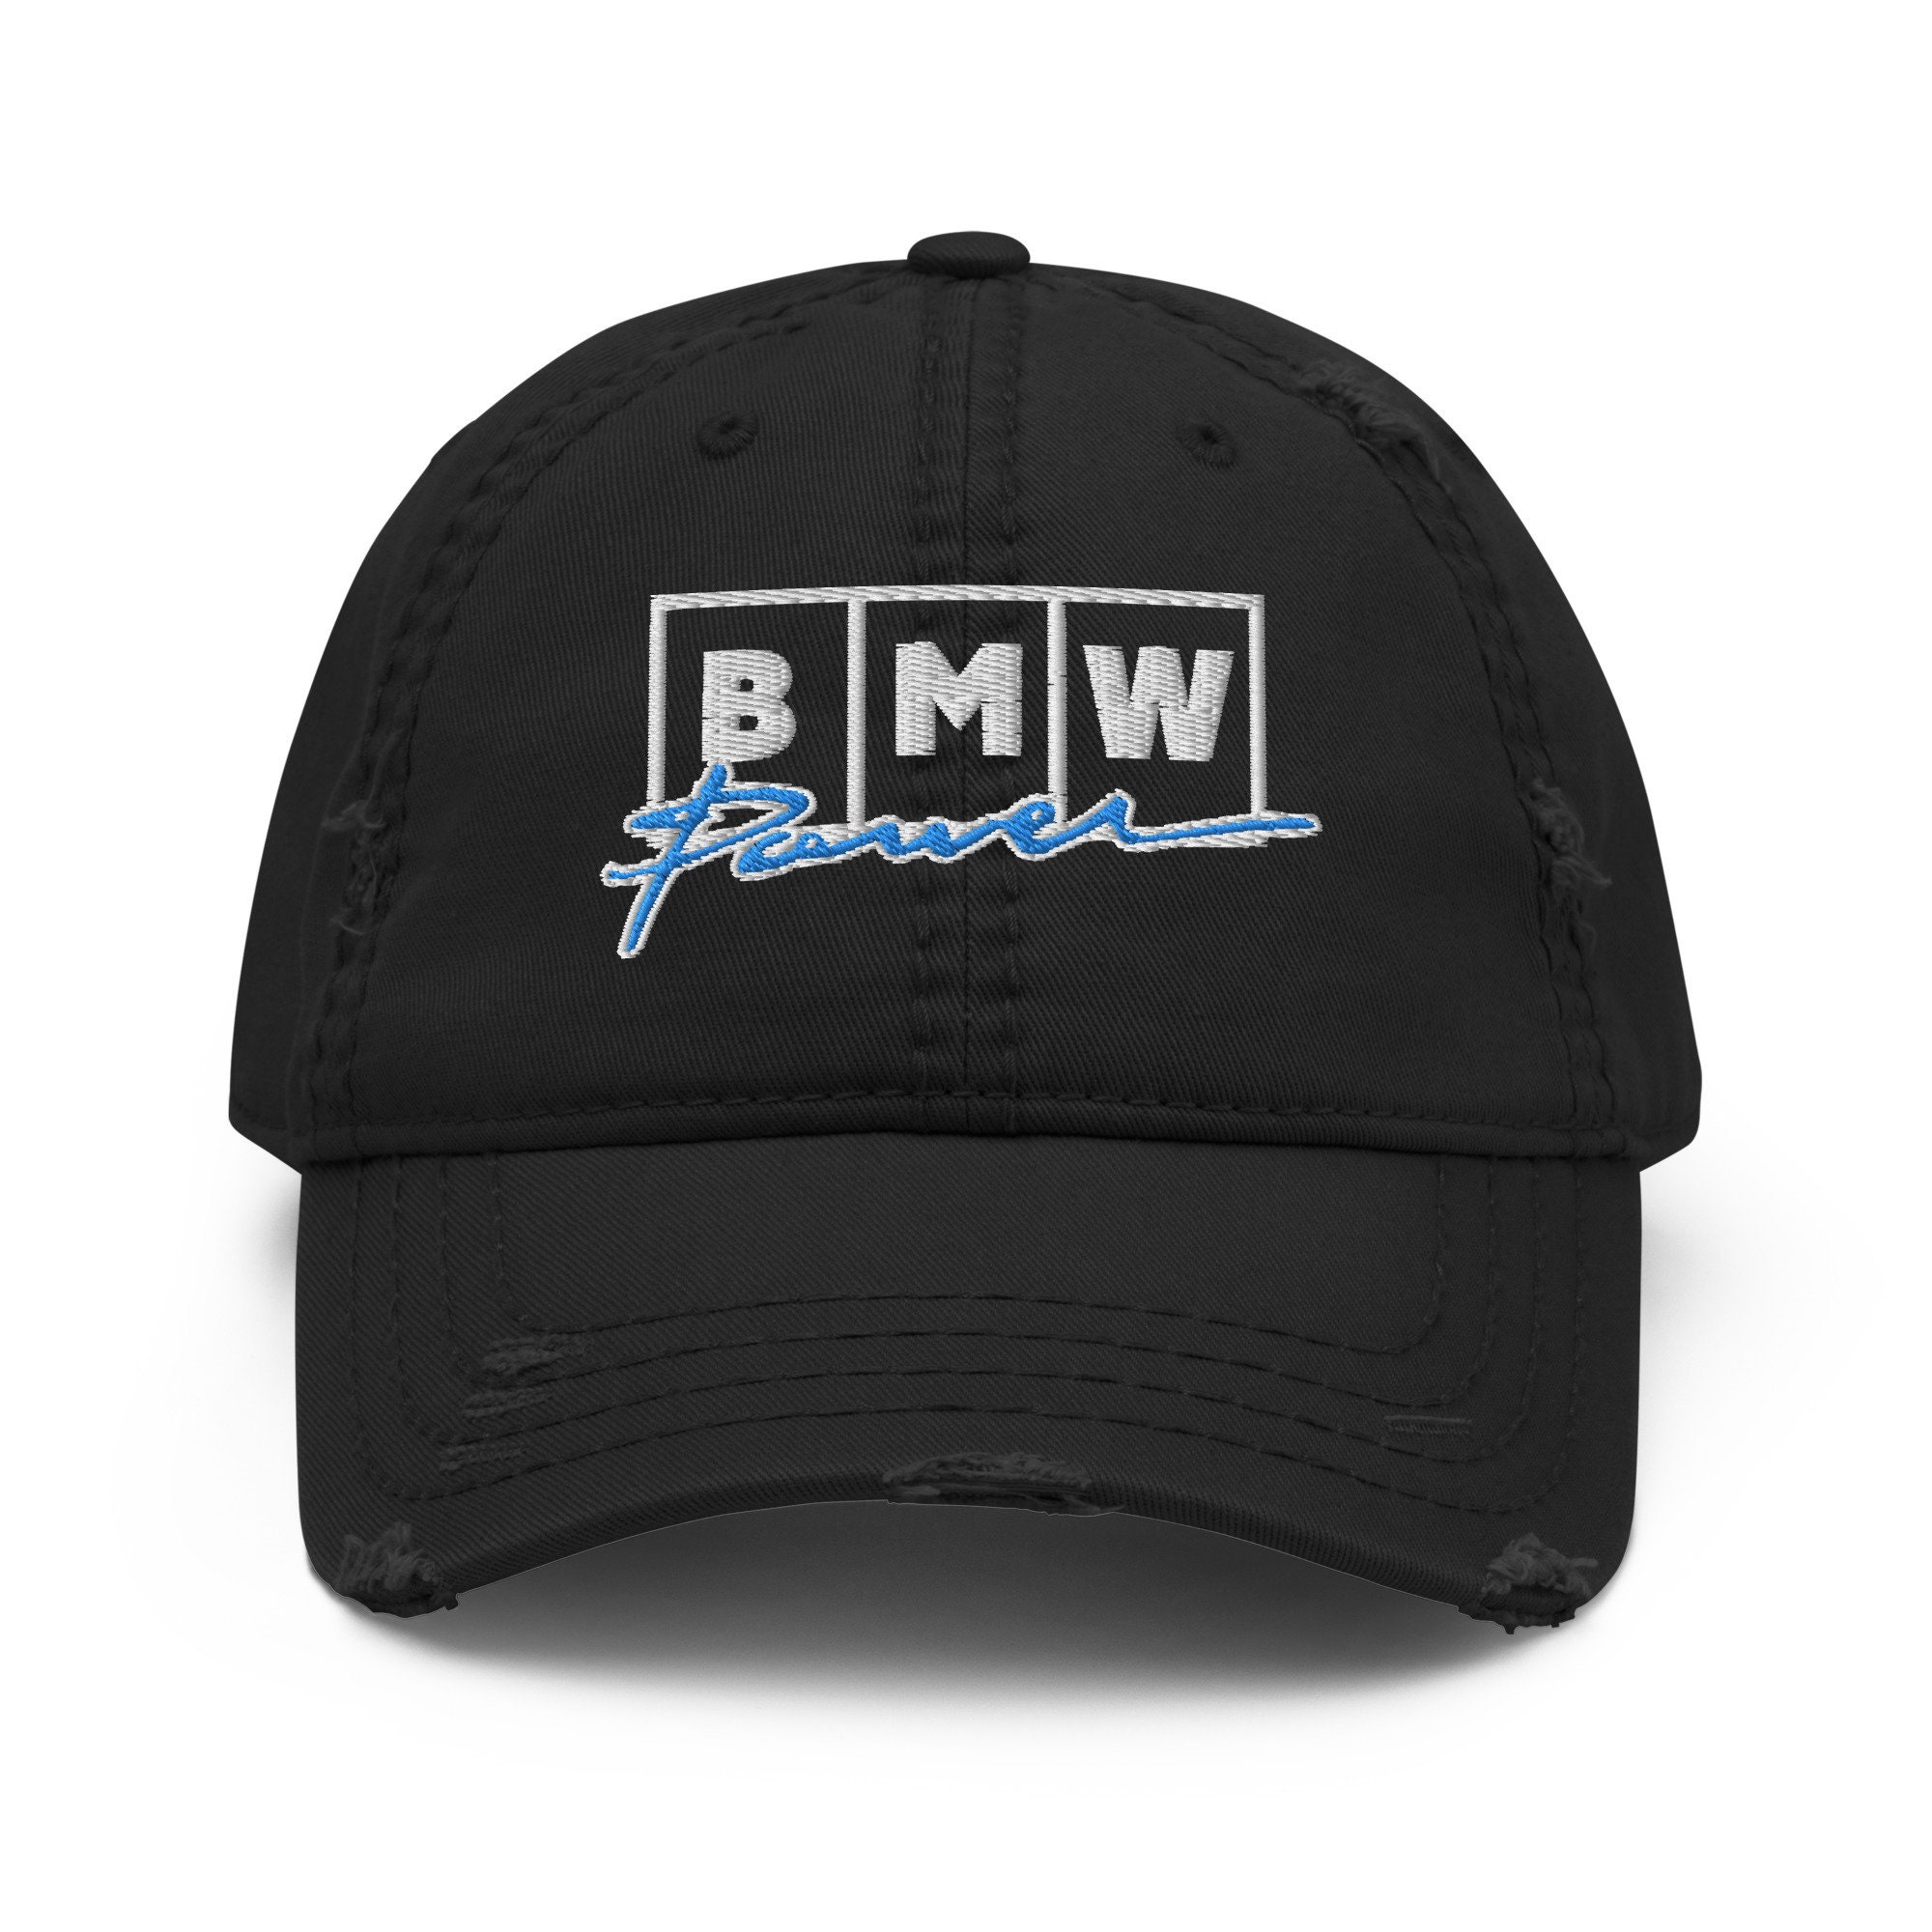 Bmw Hat -  Canada